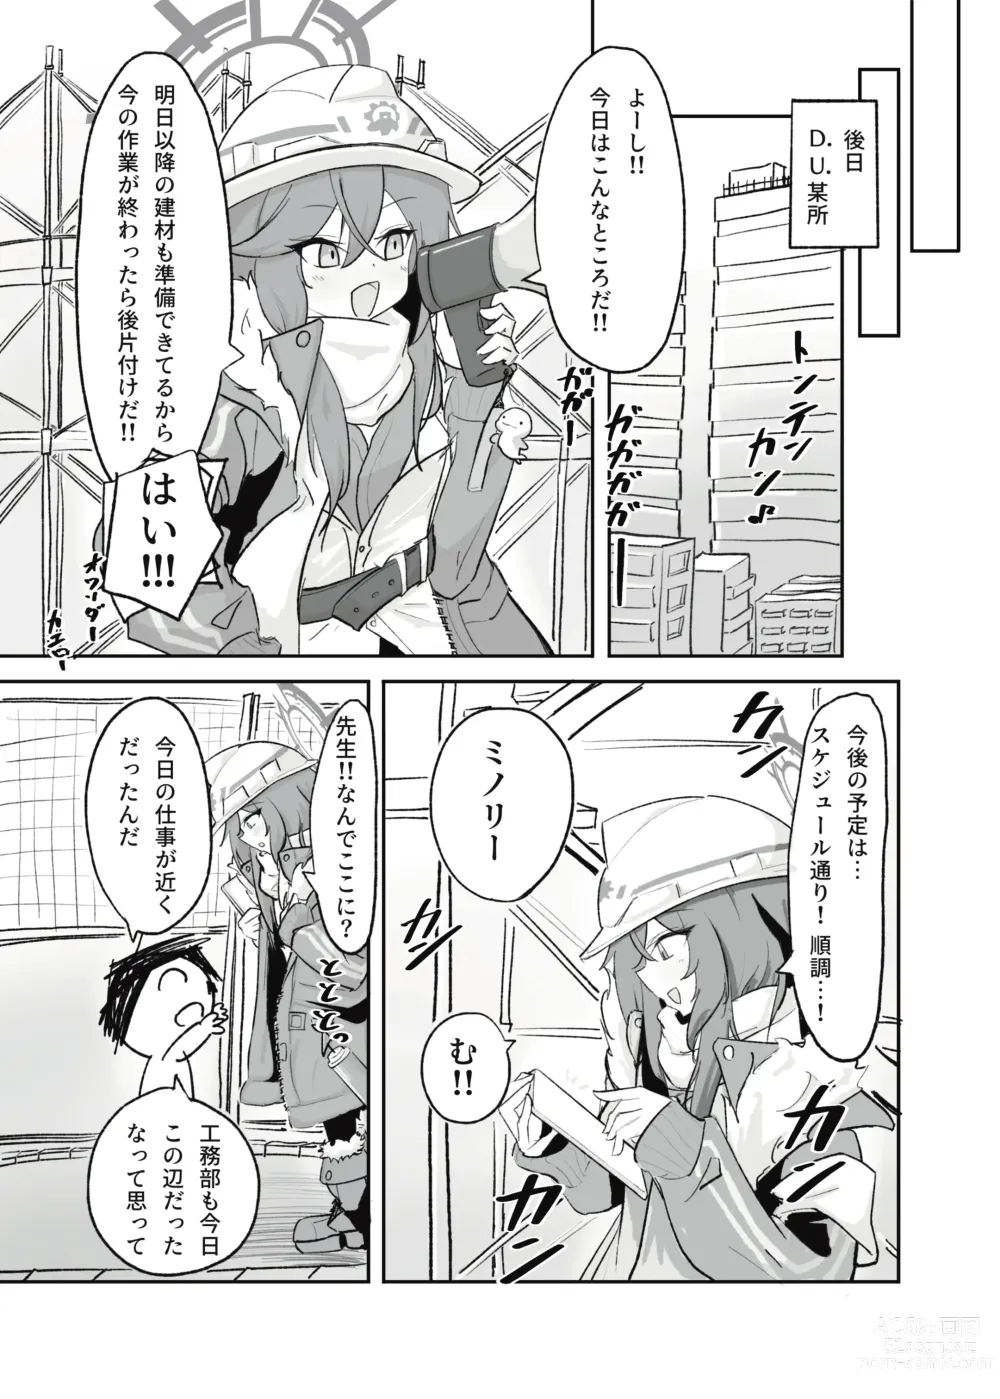 Page 5 of doujinshi Atsugi Kkutsu ga Niau Onna